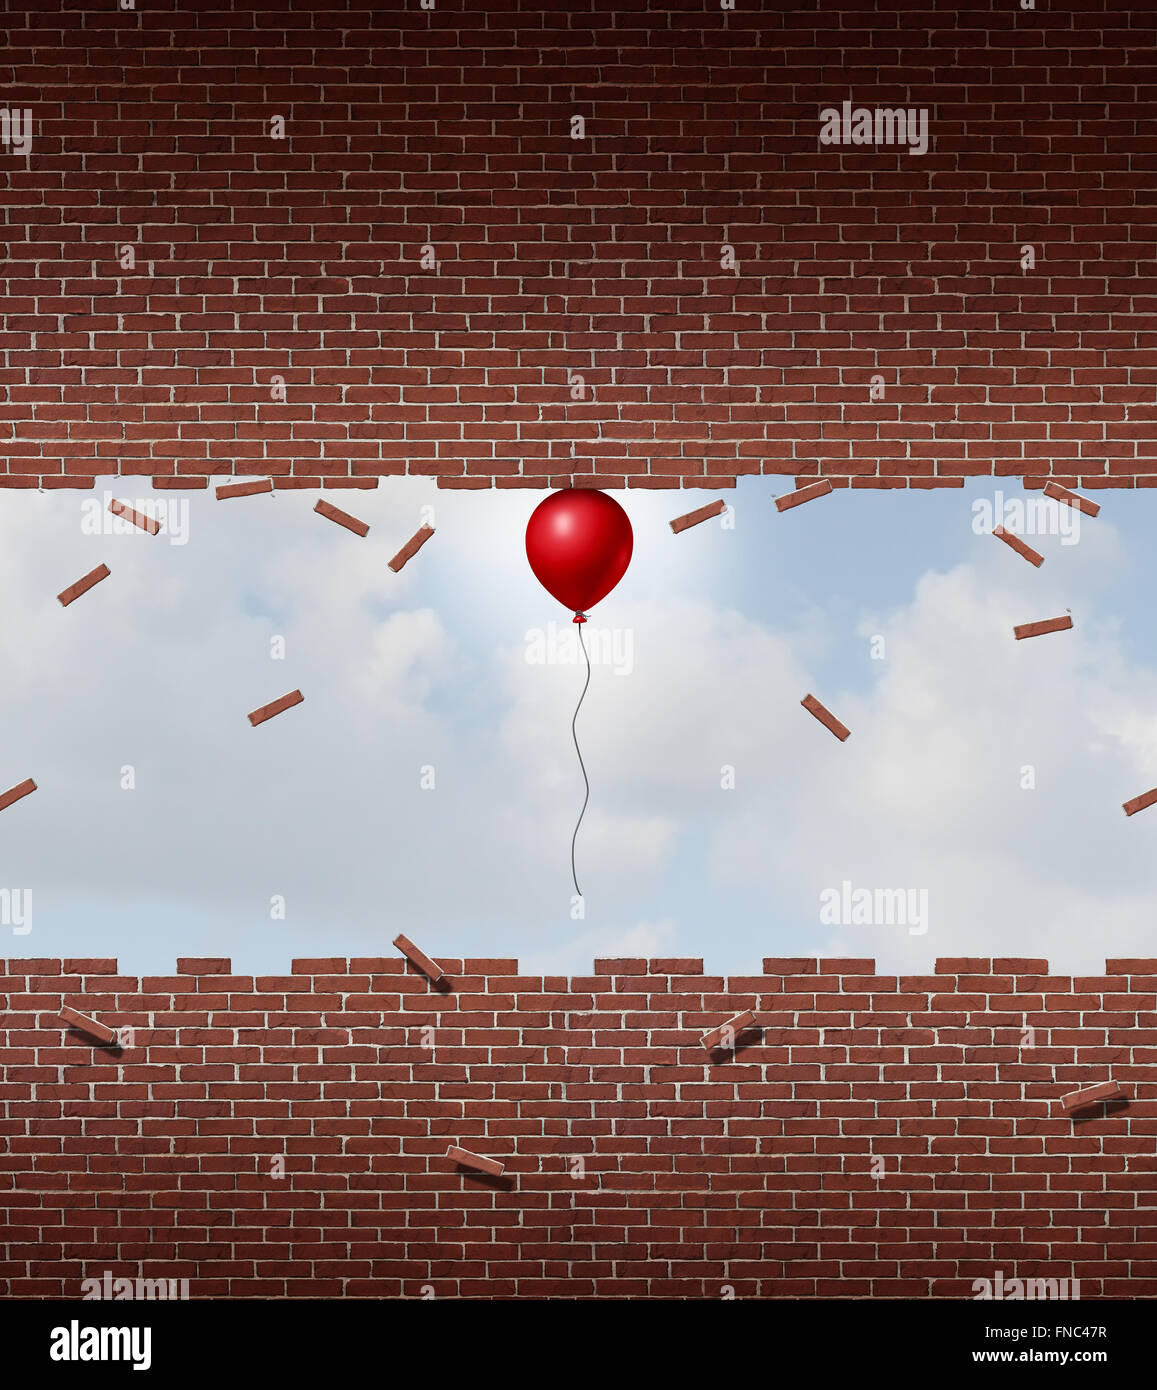 Macht Geschäftskonzept und außergewöhnliche Leistung Symbol als einen kleinen roten Ballon hob und auseinander zu brechen eine Wand Ziegel und Mörtel als Metapher für erstaunliche herausragende Übererfüllung. Stockfoto